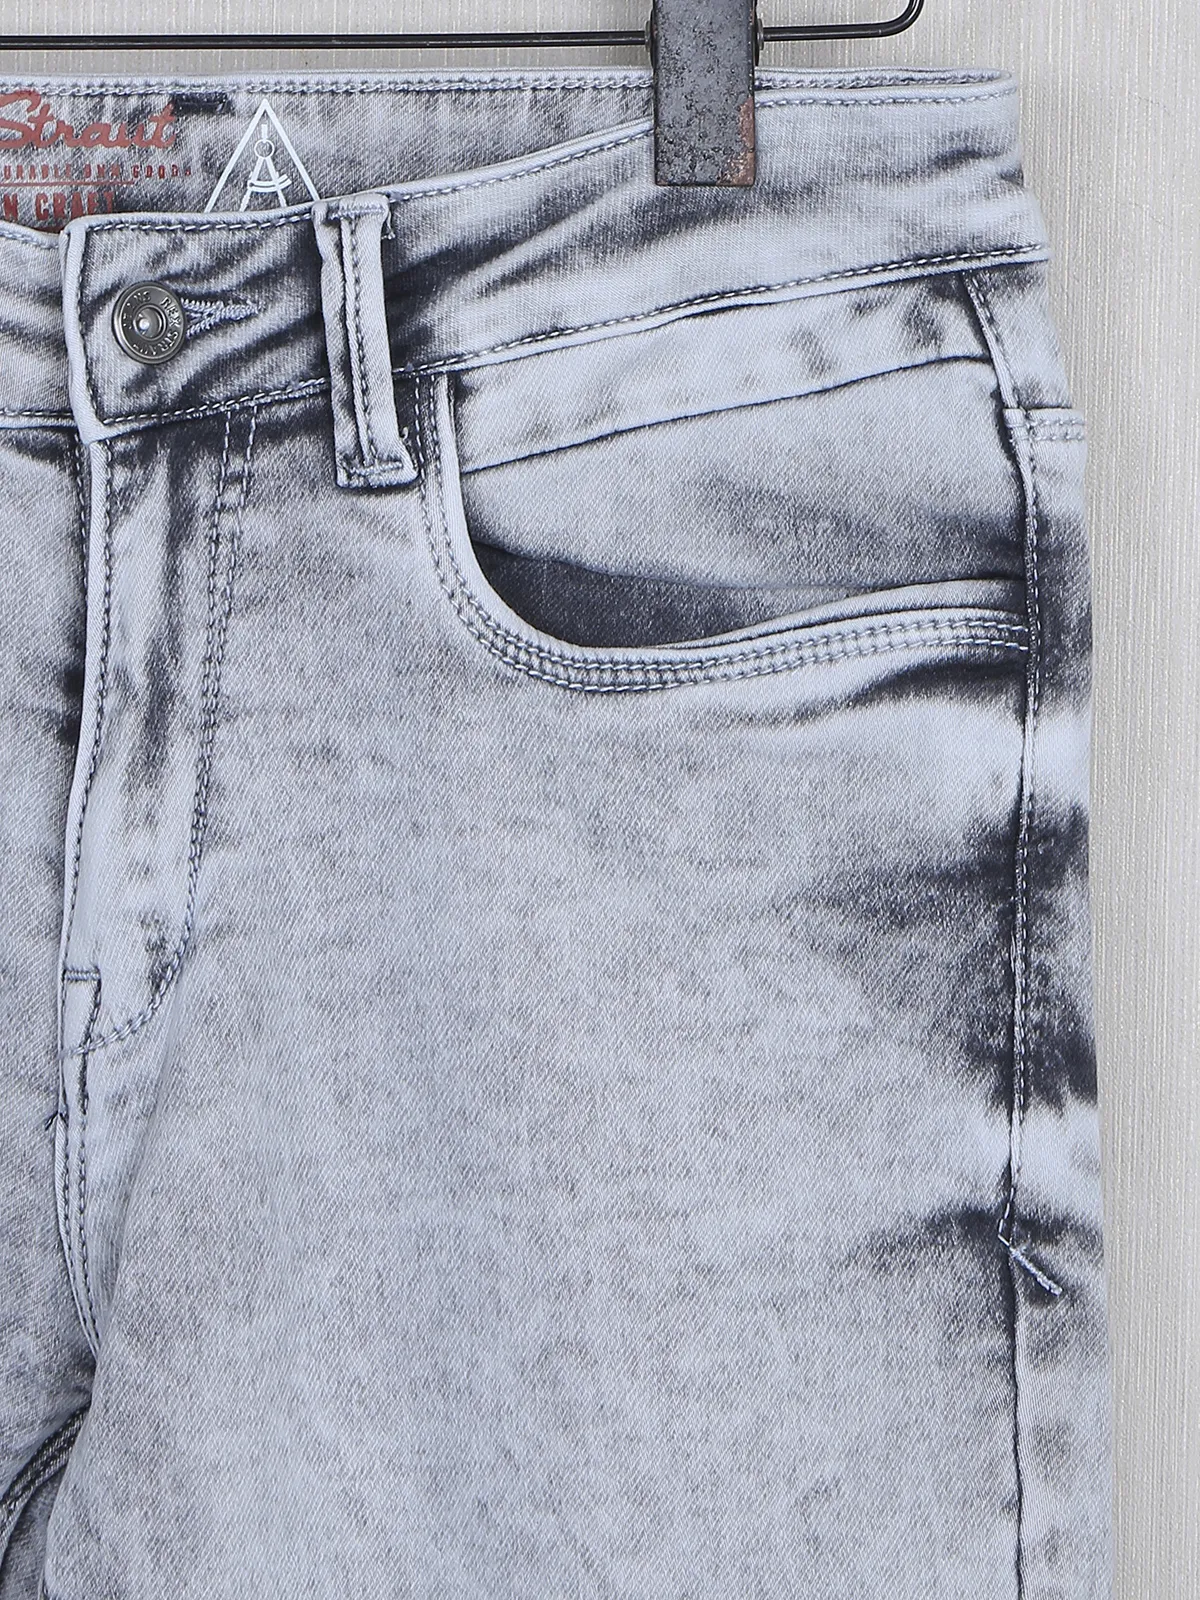 Rex Straut light grey denim washed jeans